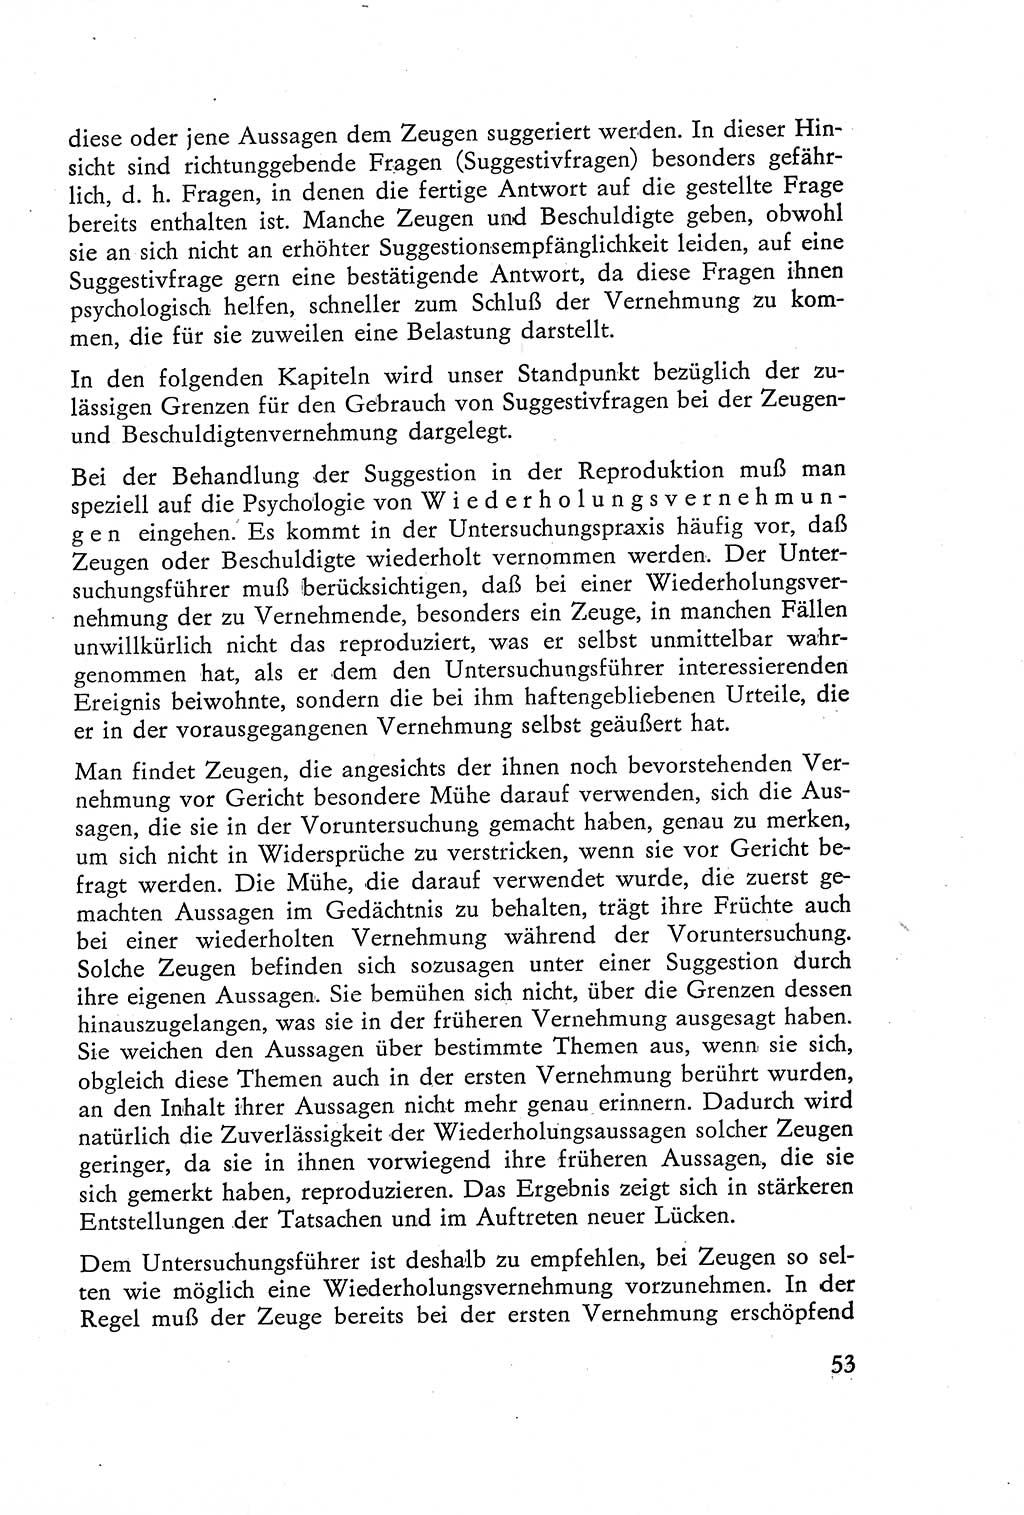 Die Vernehmung [Deutsche Demokratische Republik (DDR)] 1960, Seite 53 (Vern. DDR 1960, S. 53)